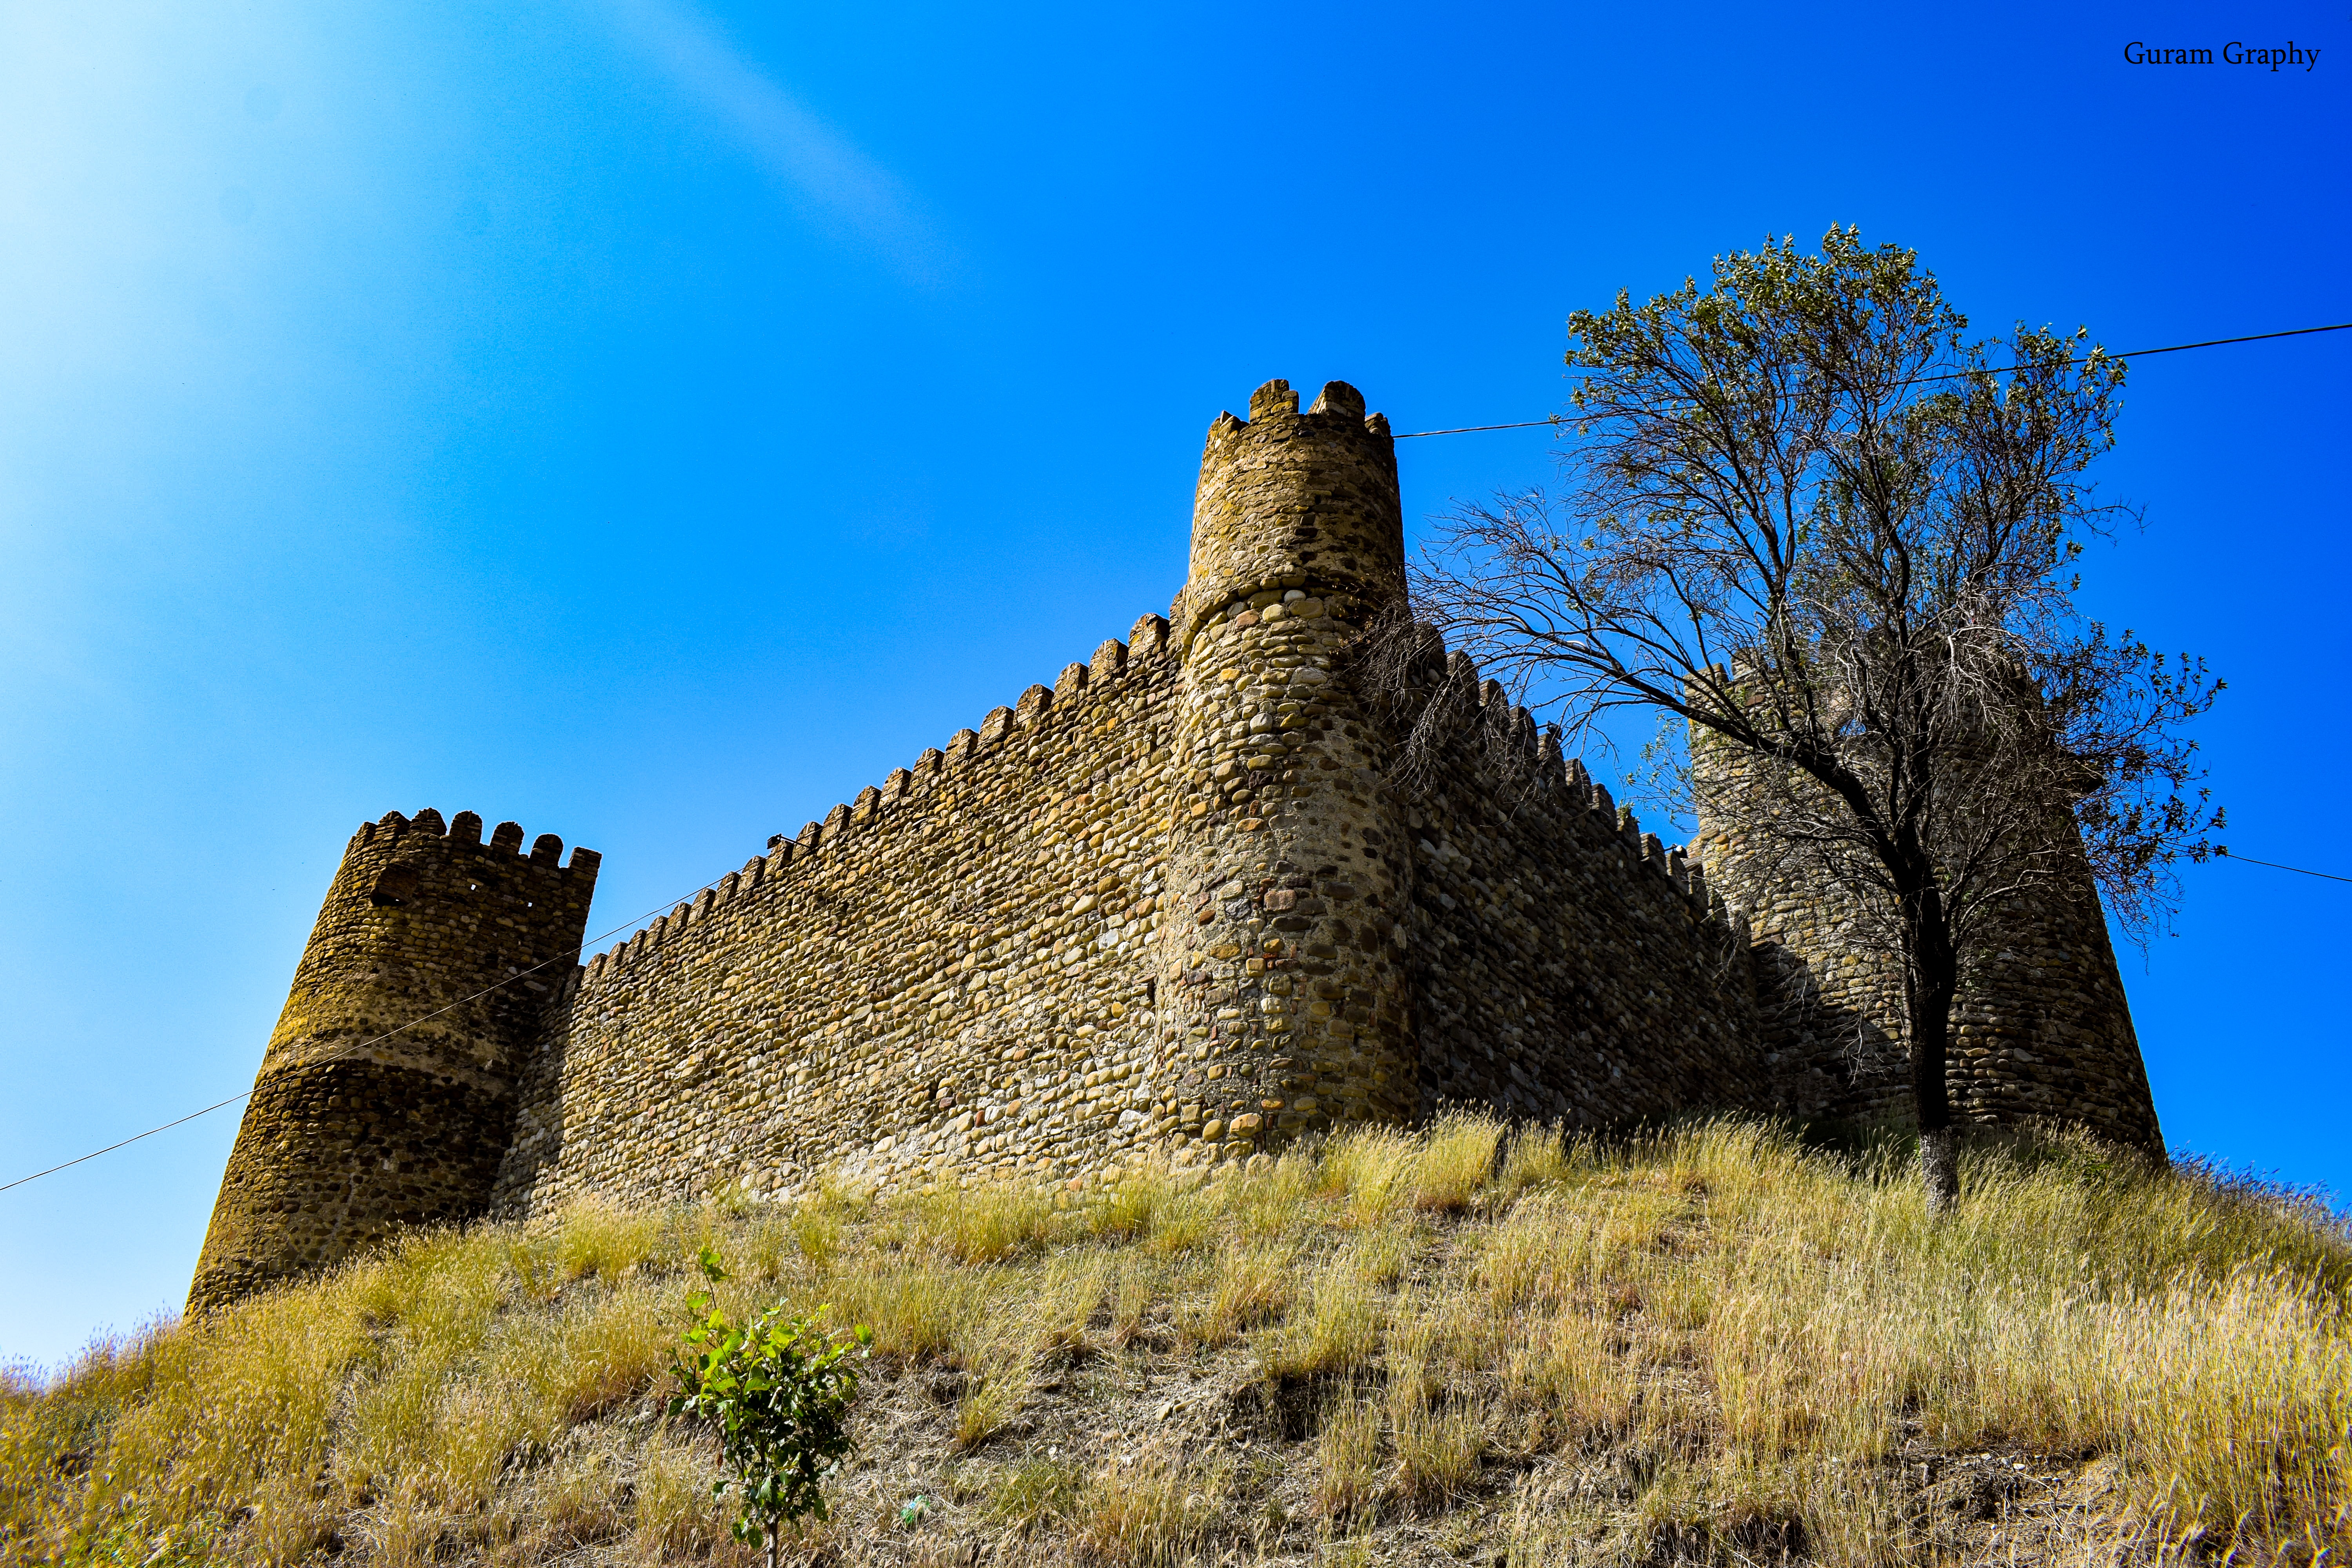 Chailuri Fortress, Kakheti region, Georgia